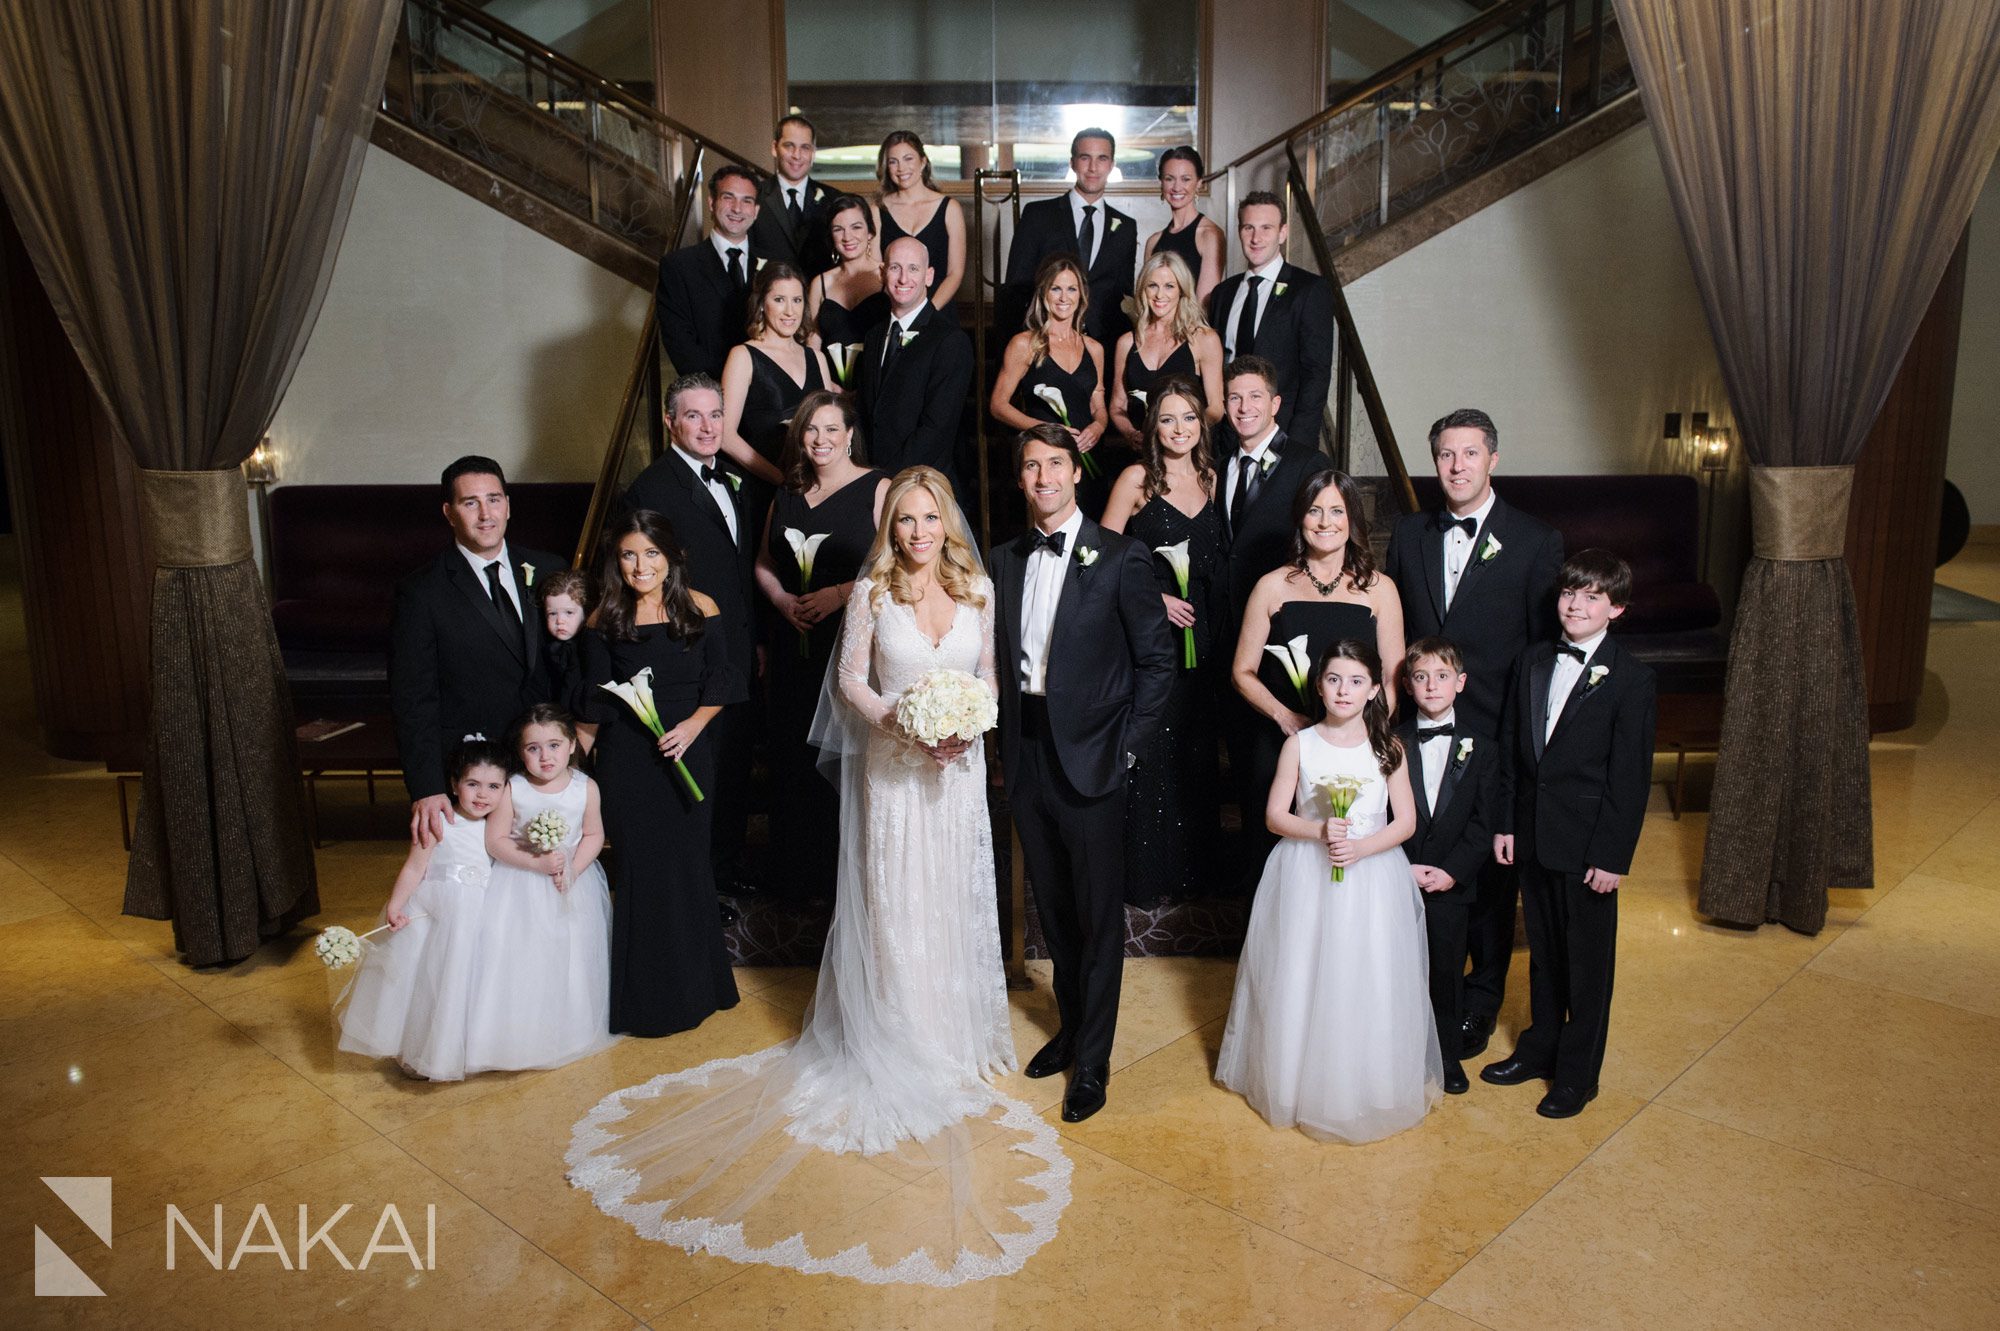 fairmont chicago wedding photo staircase bridal party